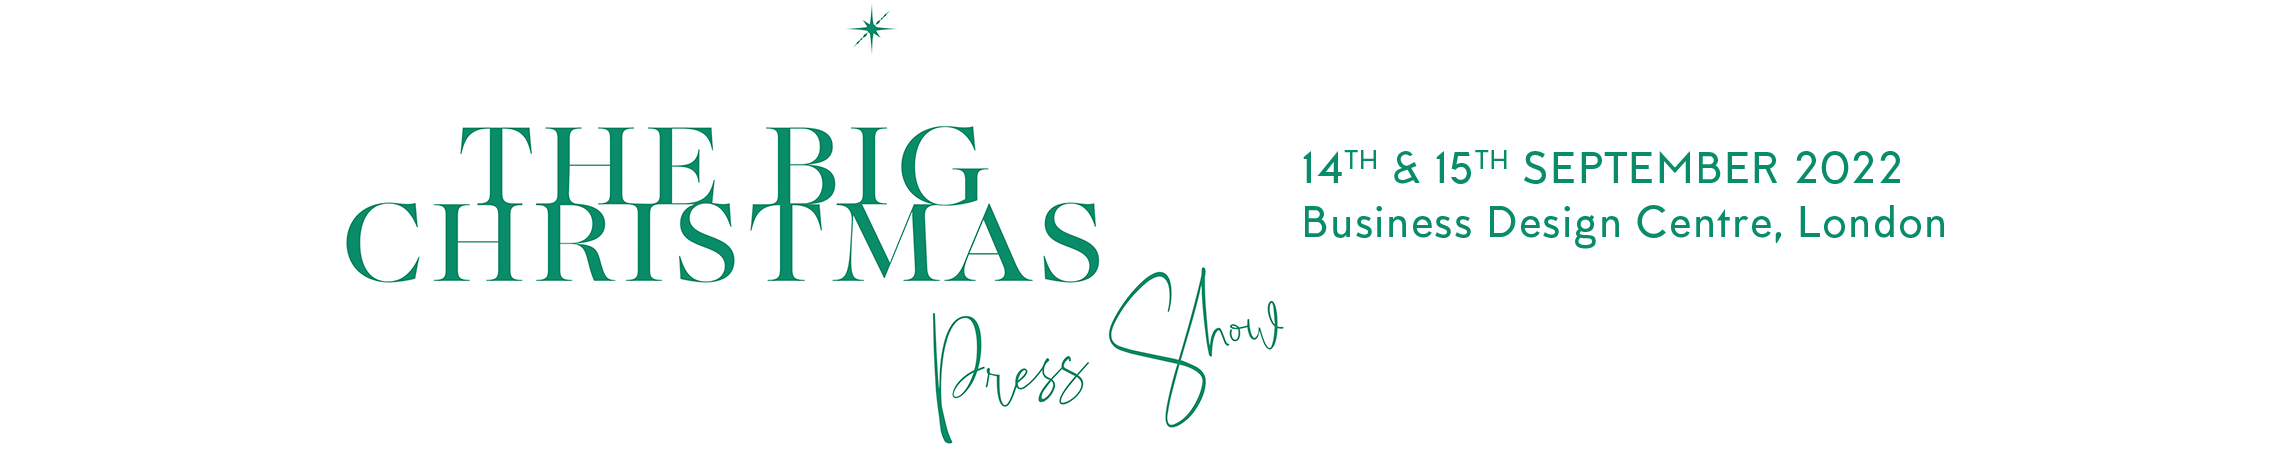 The Big Christmas Press Show